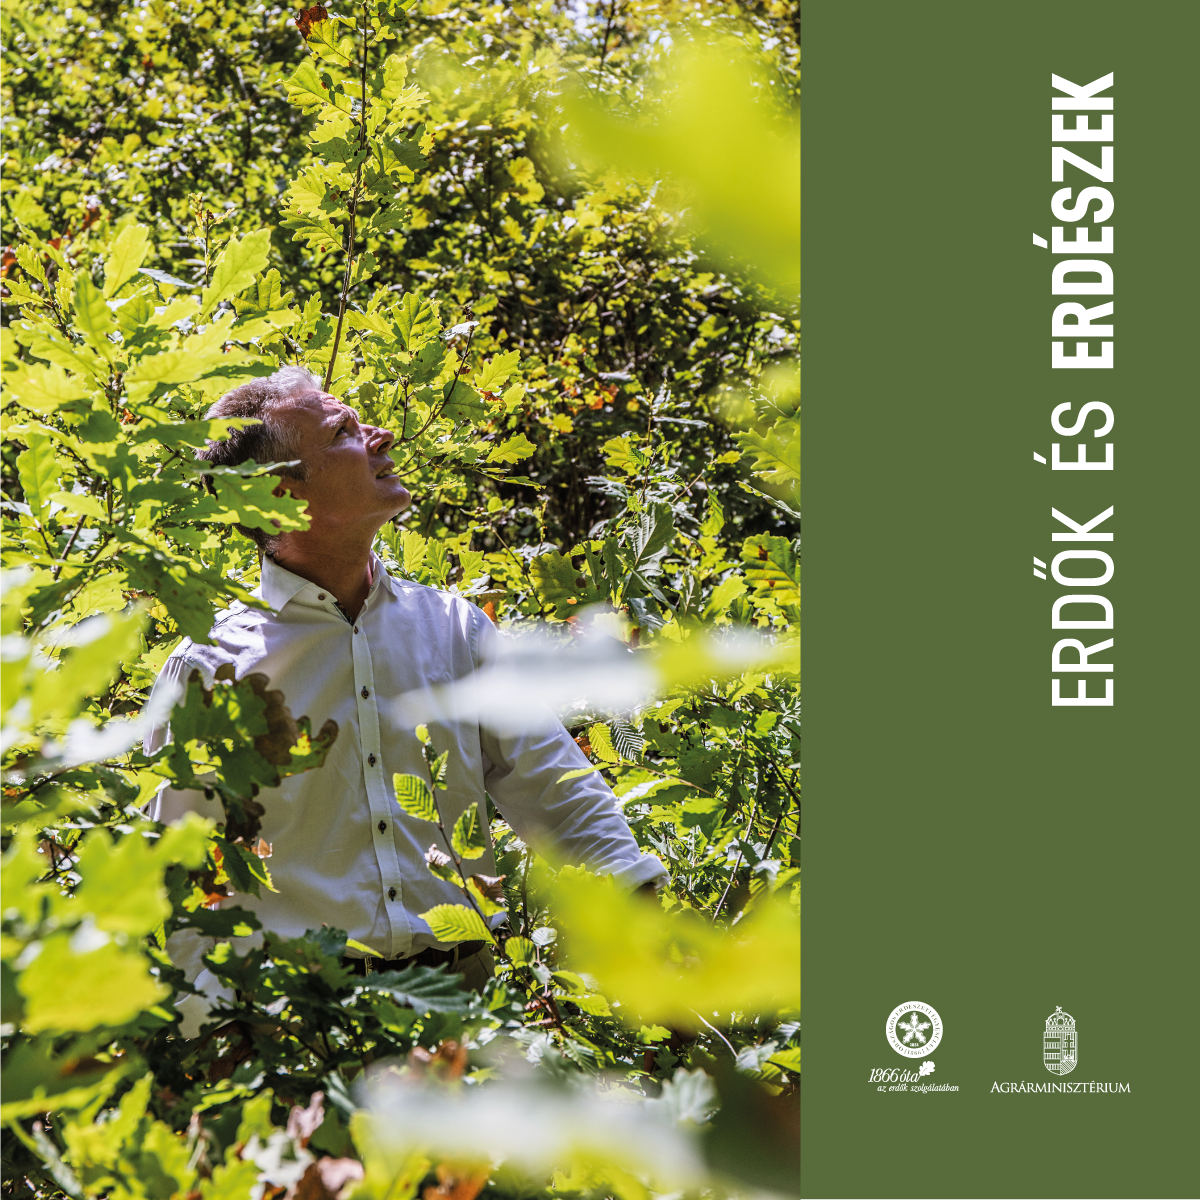 Erdők és erdészek - Az OEE kampánya erdő és ember kapcsolatáról